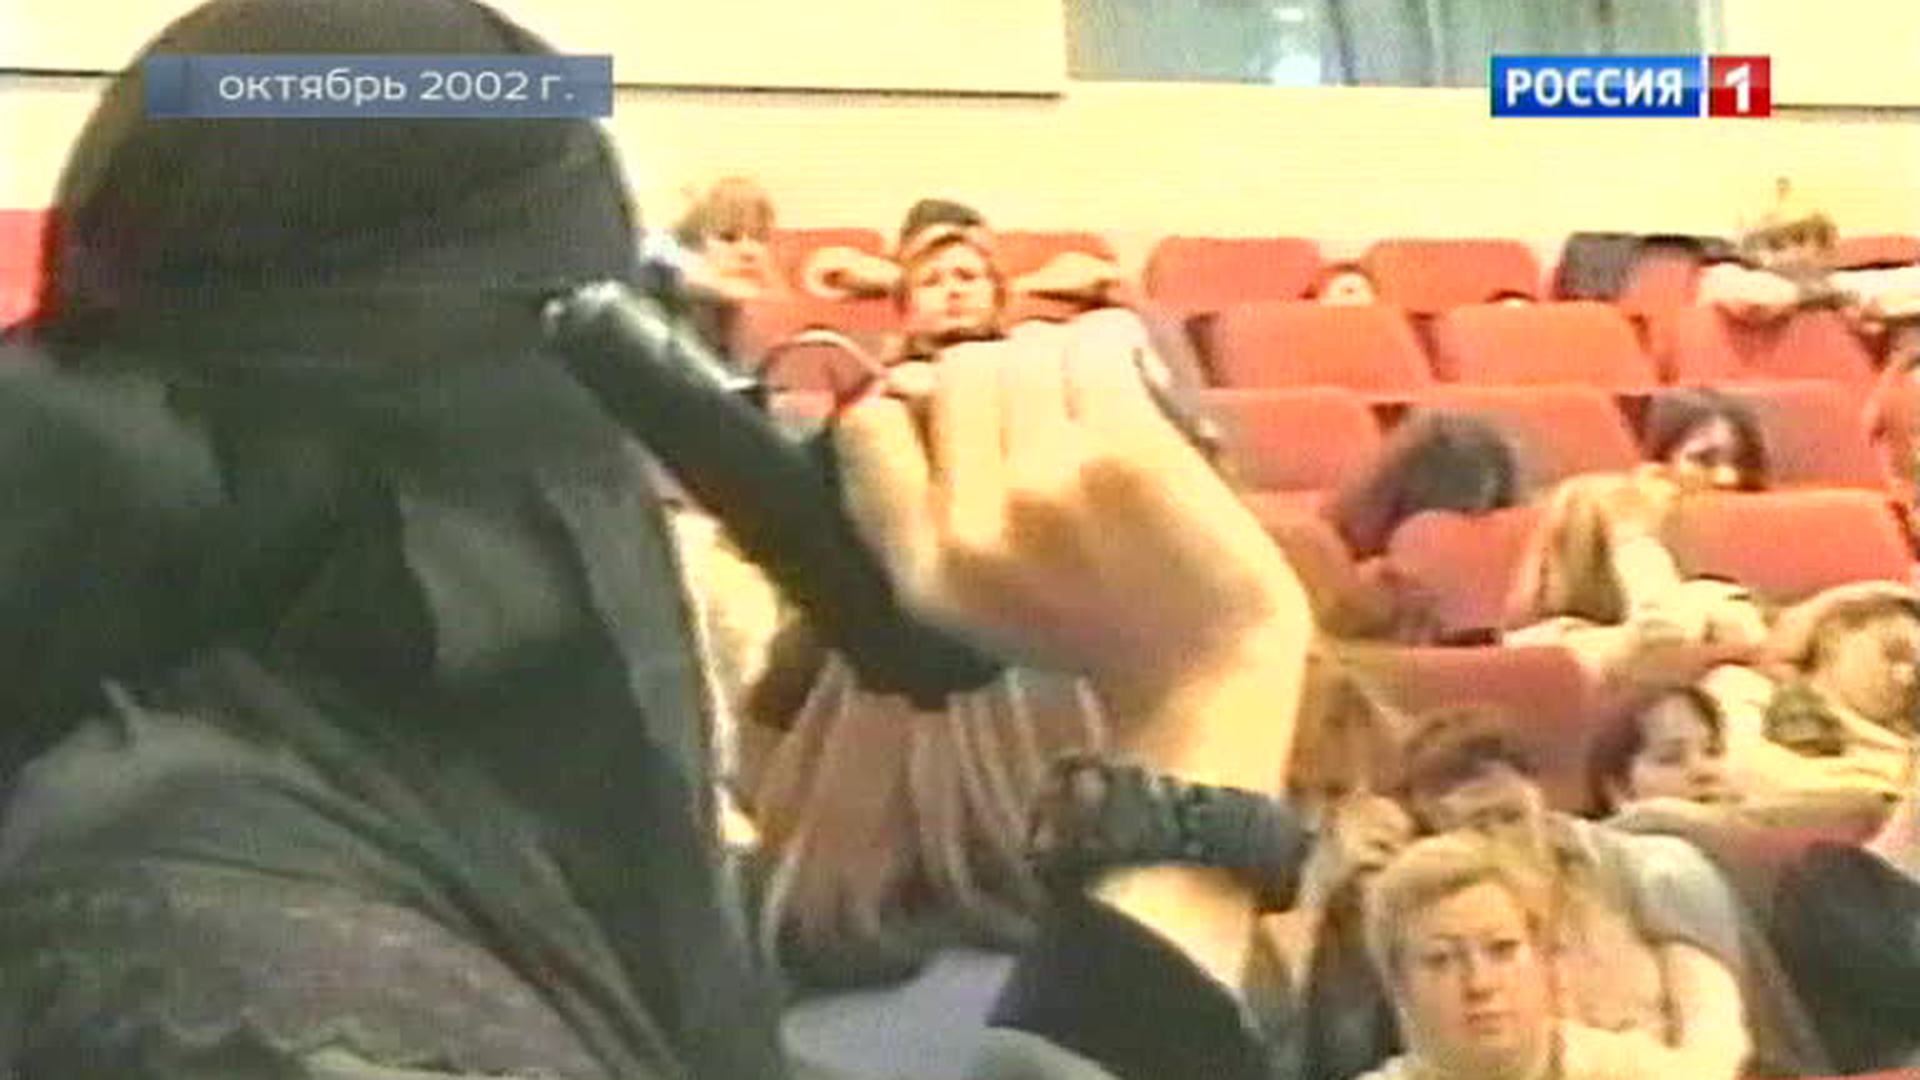 Теракт в москве театр норд ост. 23 Октября 2002 года в театральный центр на Дубровке в Москве. Теракта на Дубровке в Москве (2002).